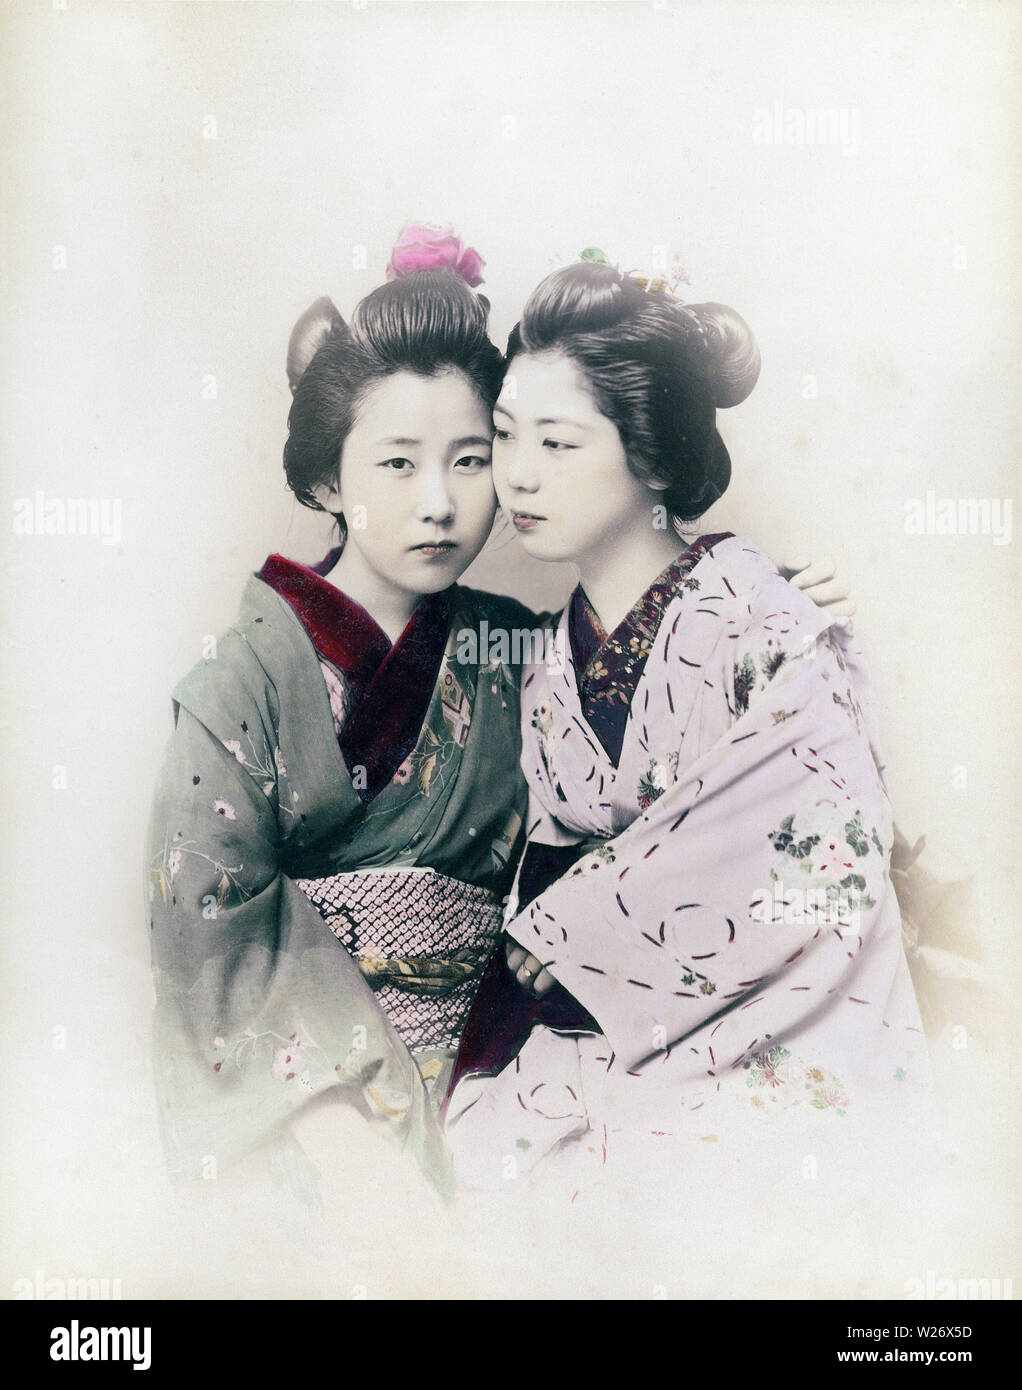 [ 1890 GIAPPONE - Due donne giapponesi ] - Due maiko (apprendista geisha) in kimono e acconciature tradizionali in un ambiente intimo pongono. Xix secolo albume vintage fotografia. Foto Stock